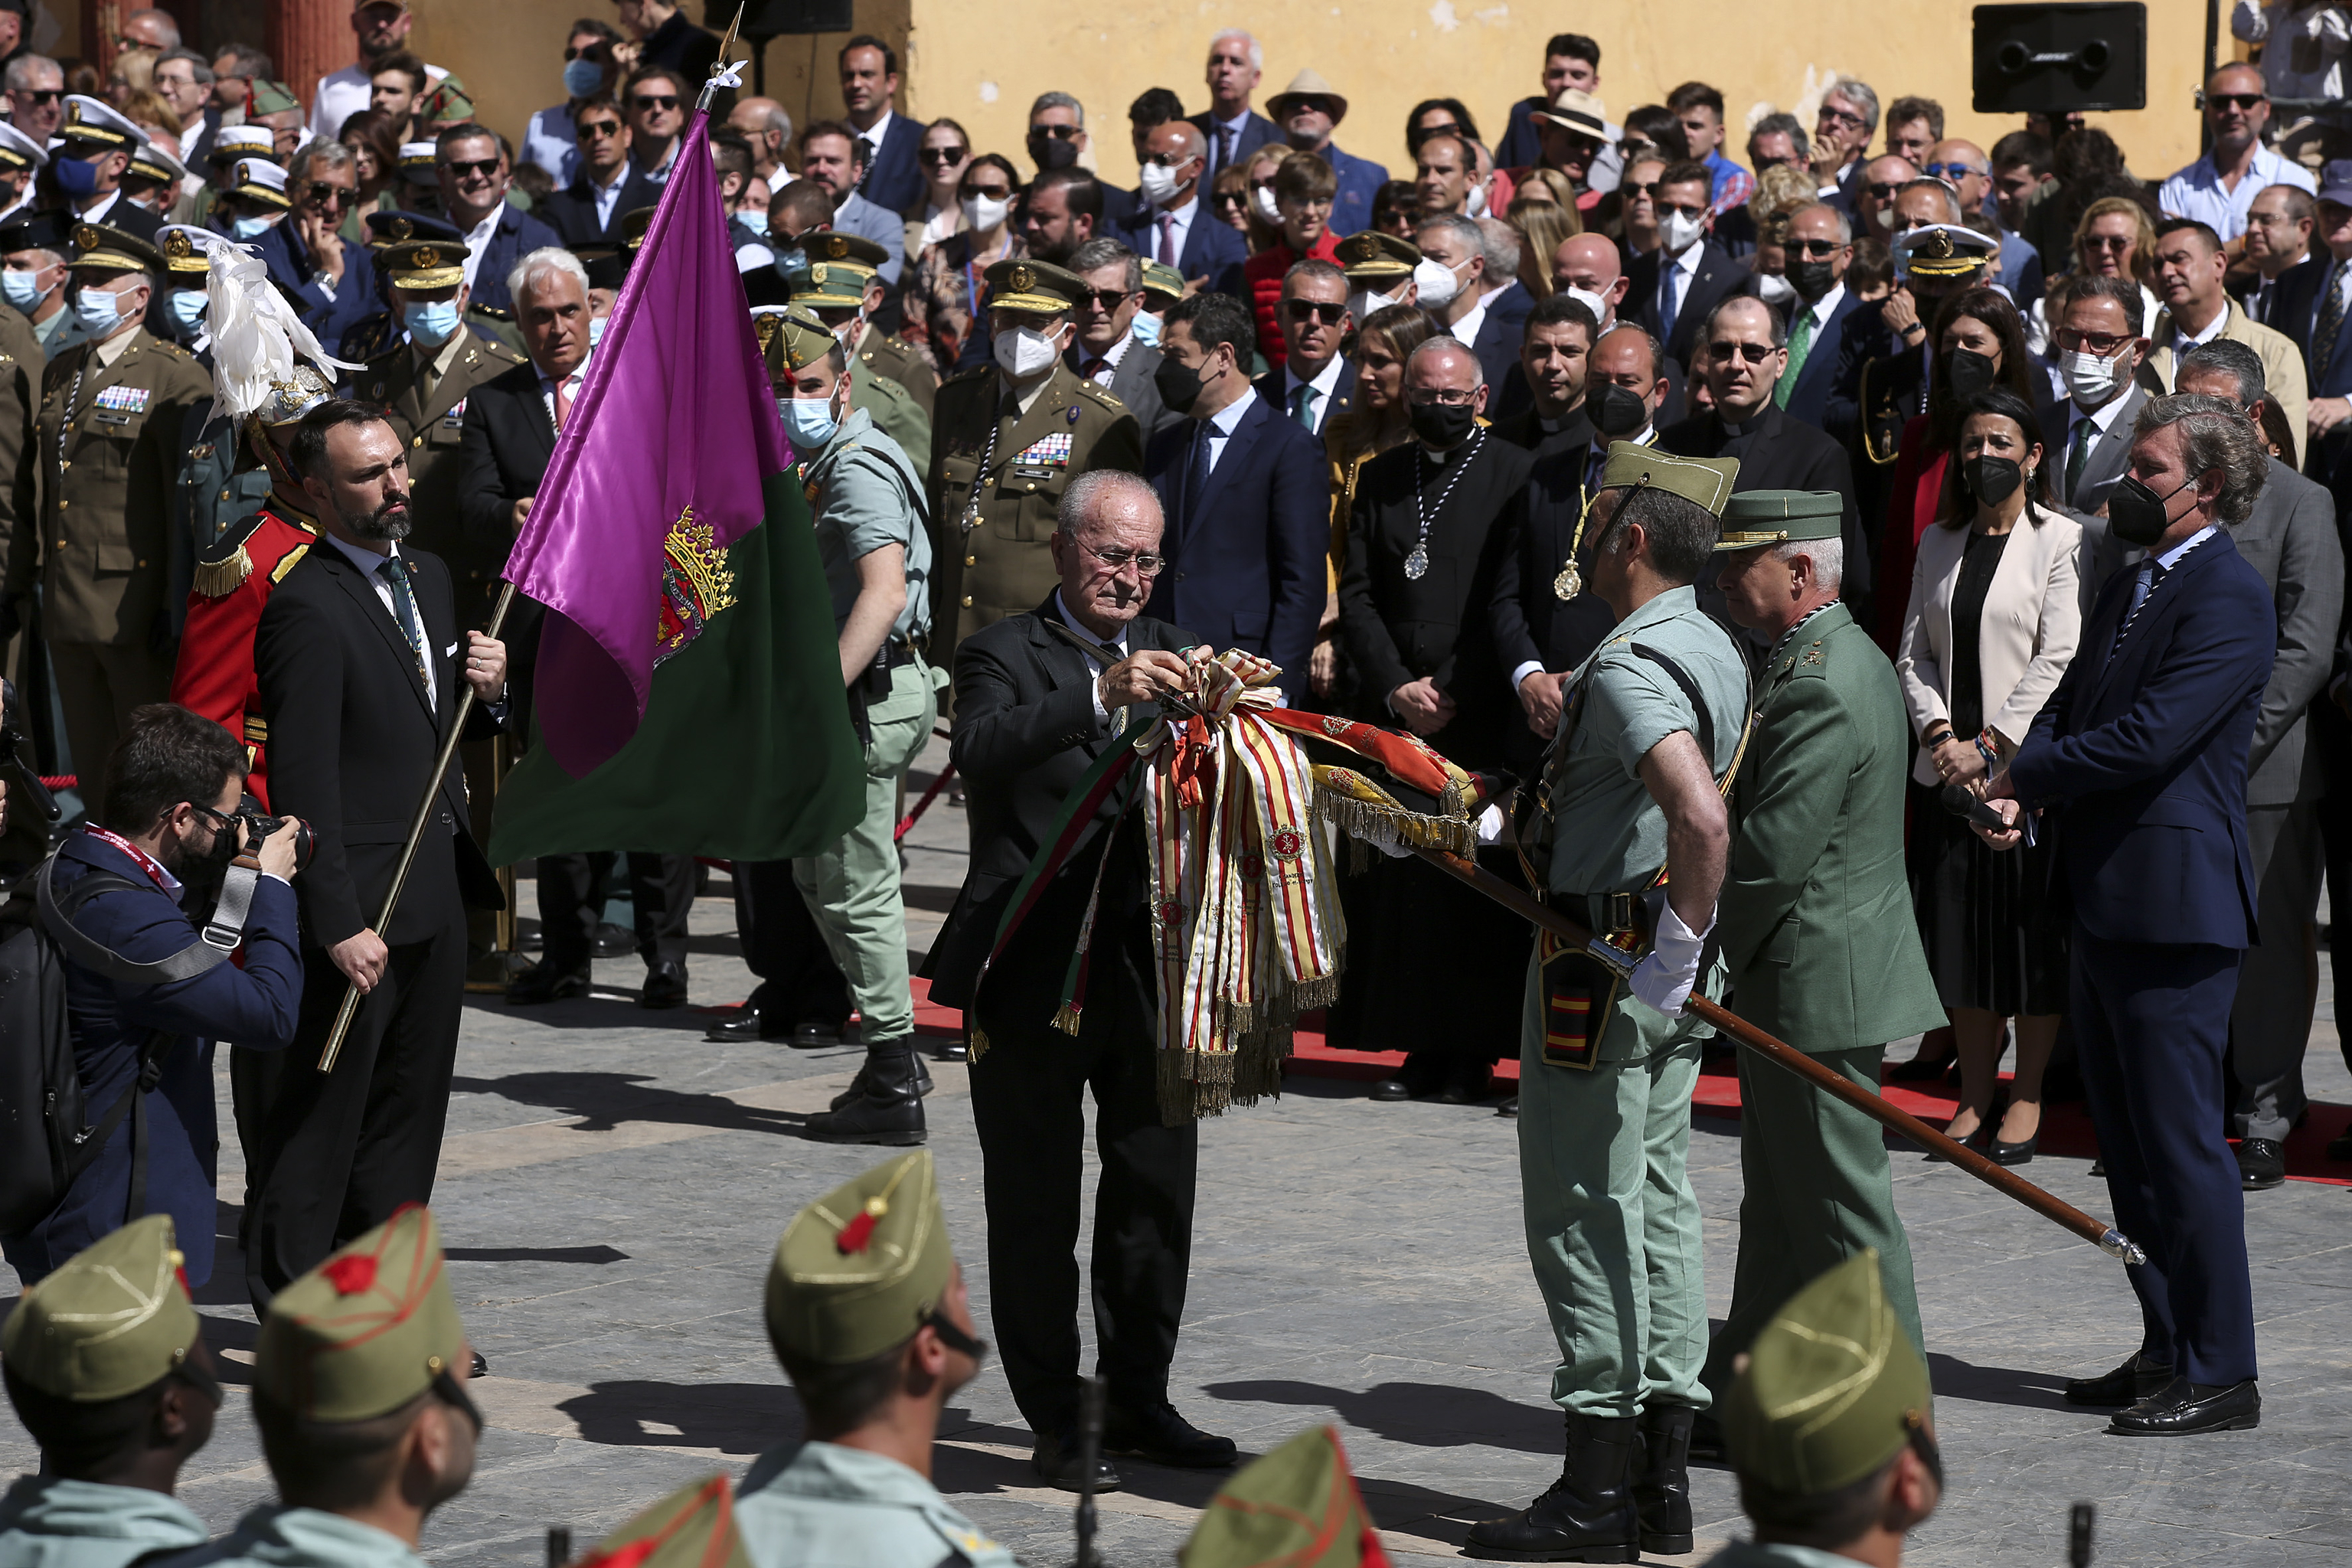 El alcalde de Mlaga impone un corbatn con los colores de la bandera de Mlaga.